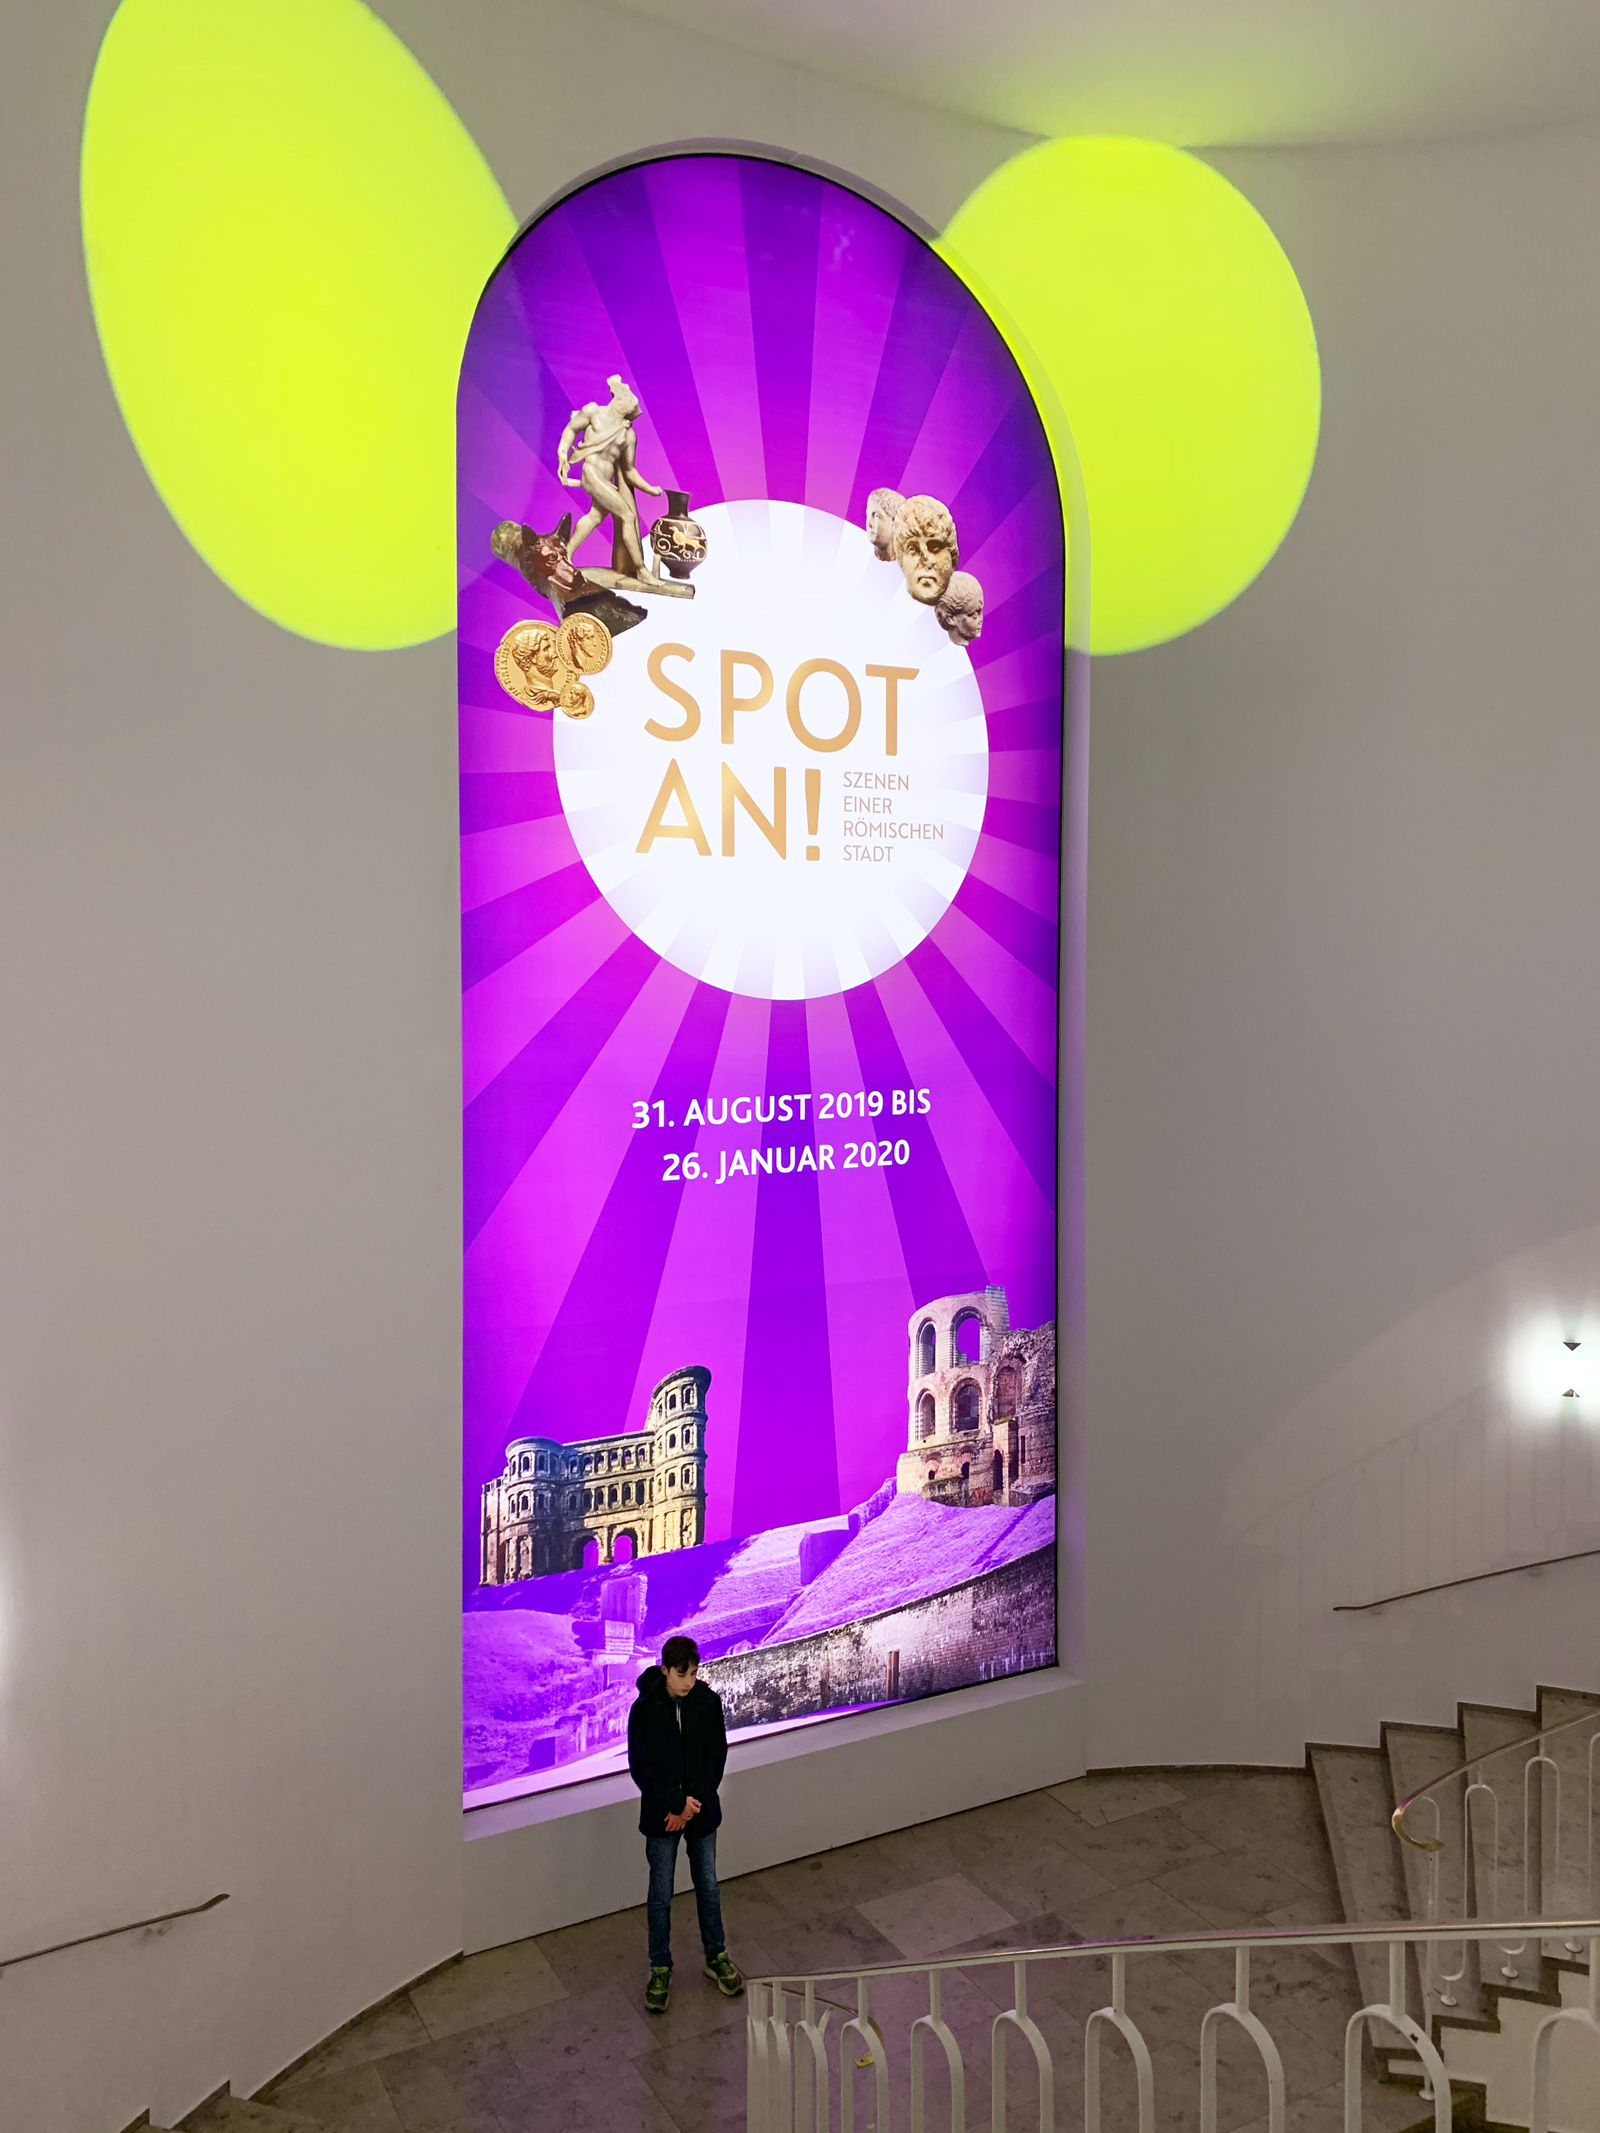 Leuchtbanner für die Ausstellung "SPOT AN!" des Rheinischen Landesmuseums